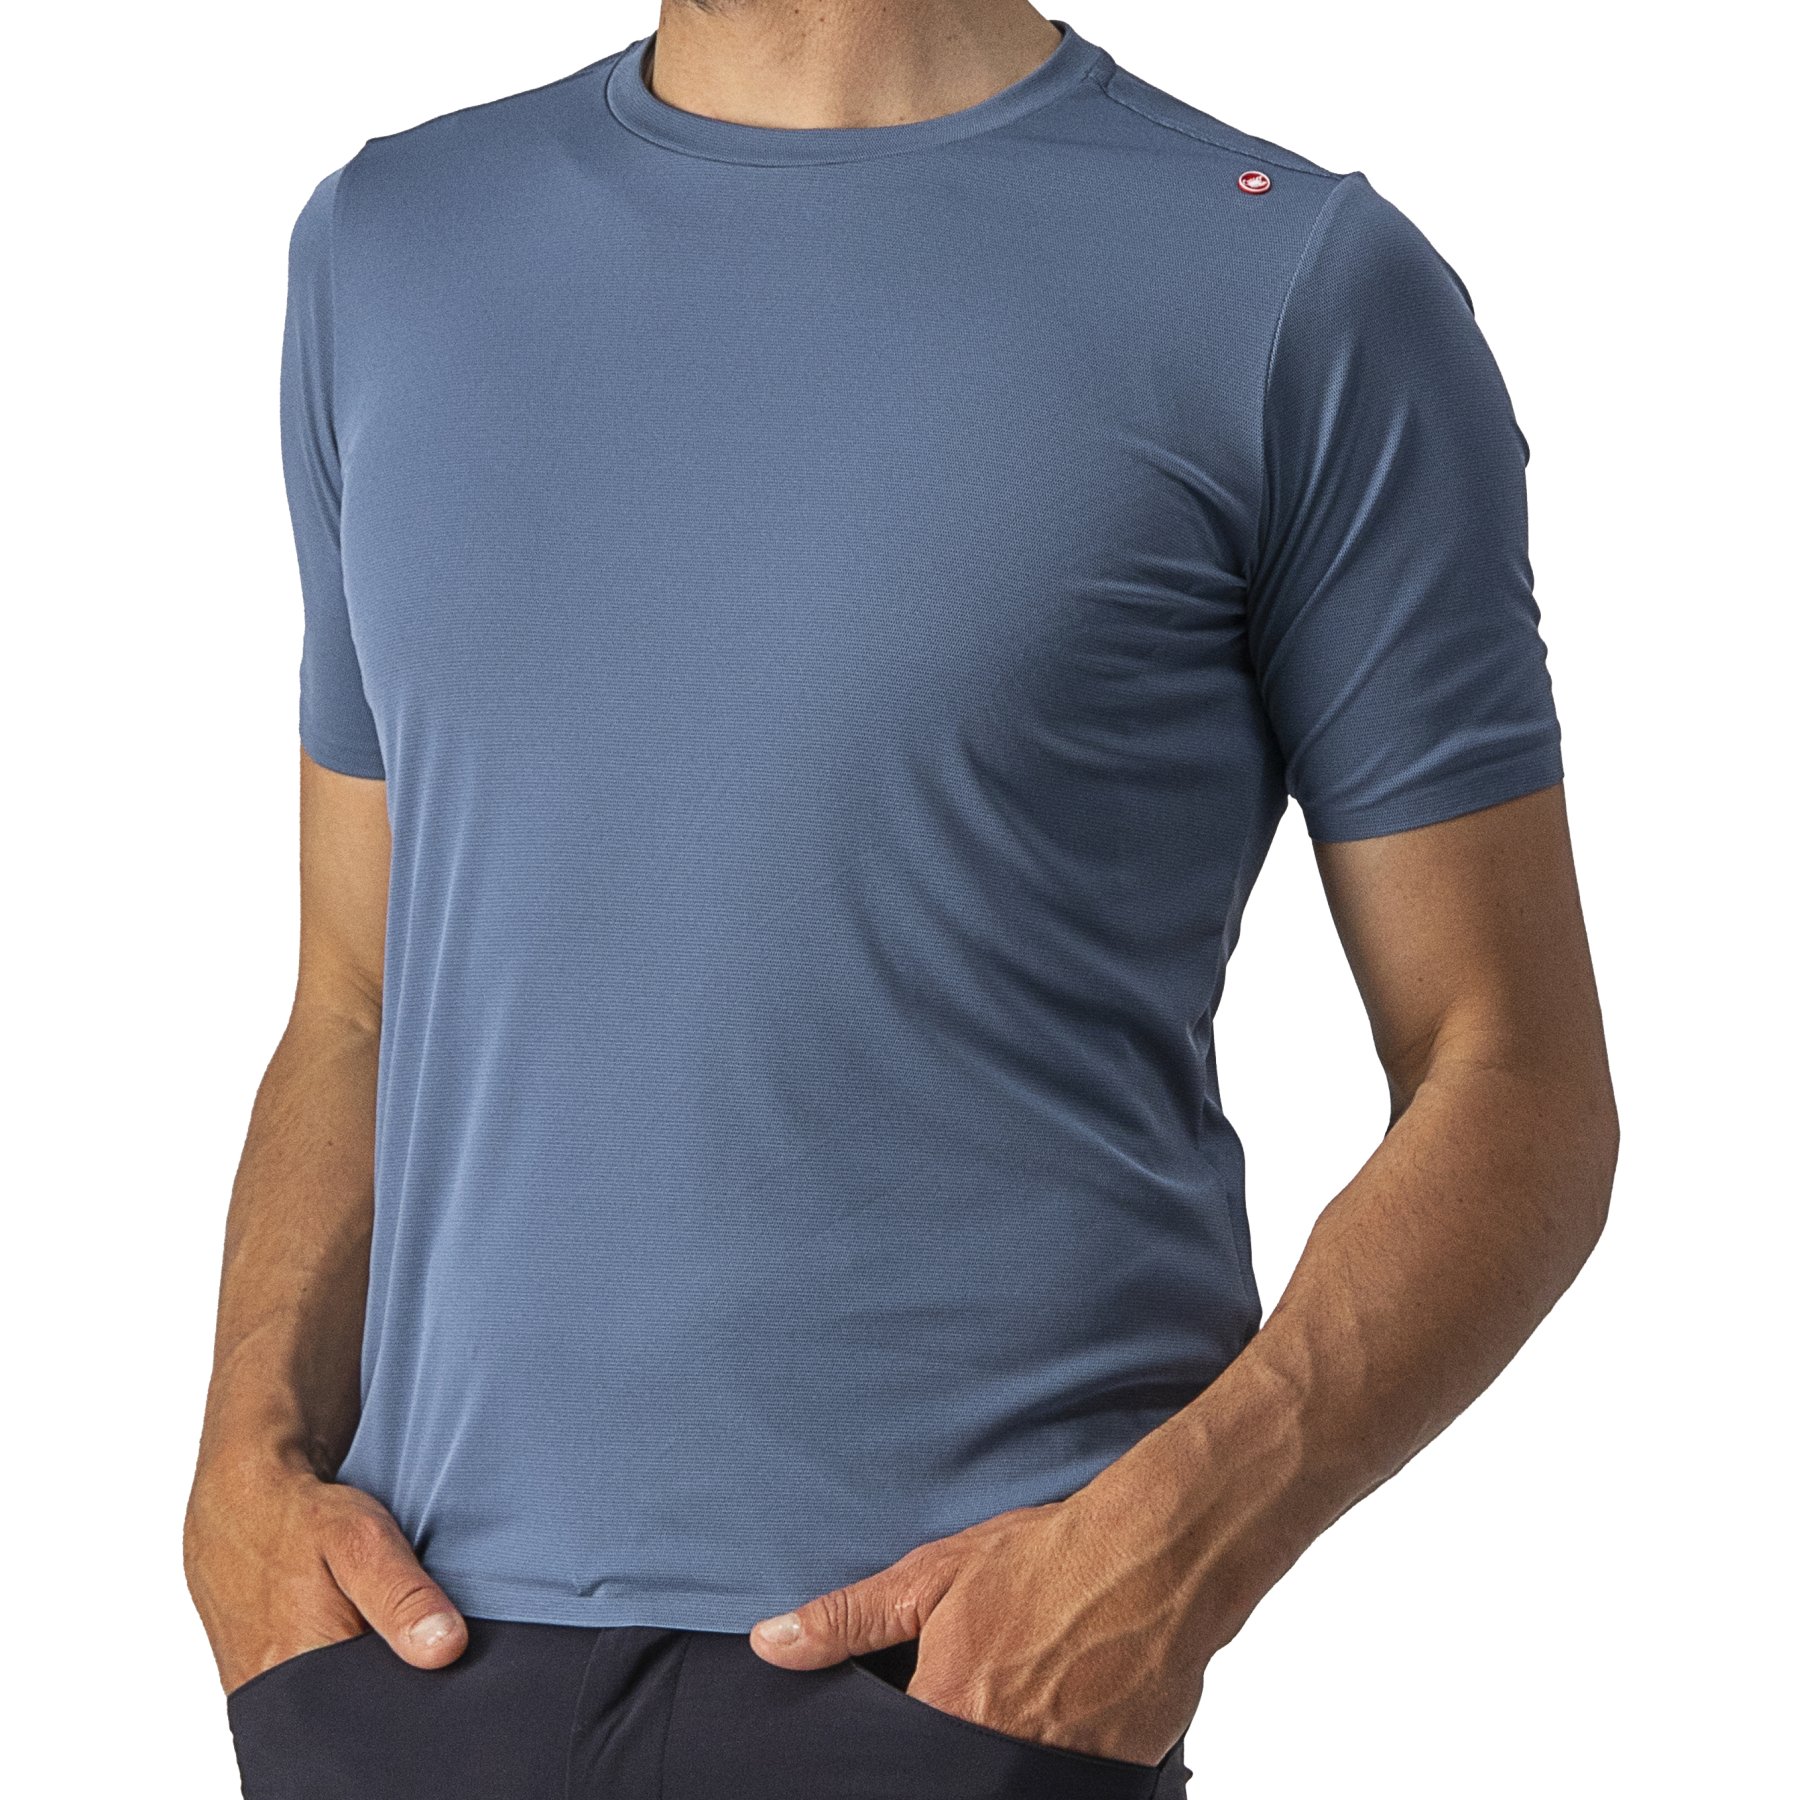 Bild von Castelli Tech 2 T-Shirt - light steel blue 062